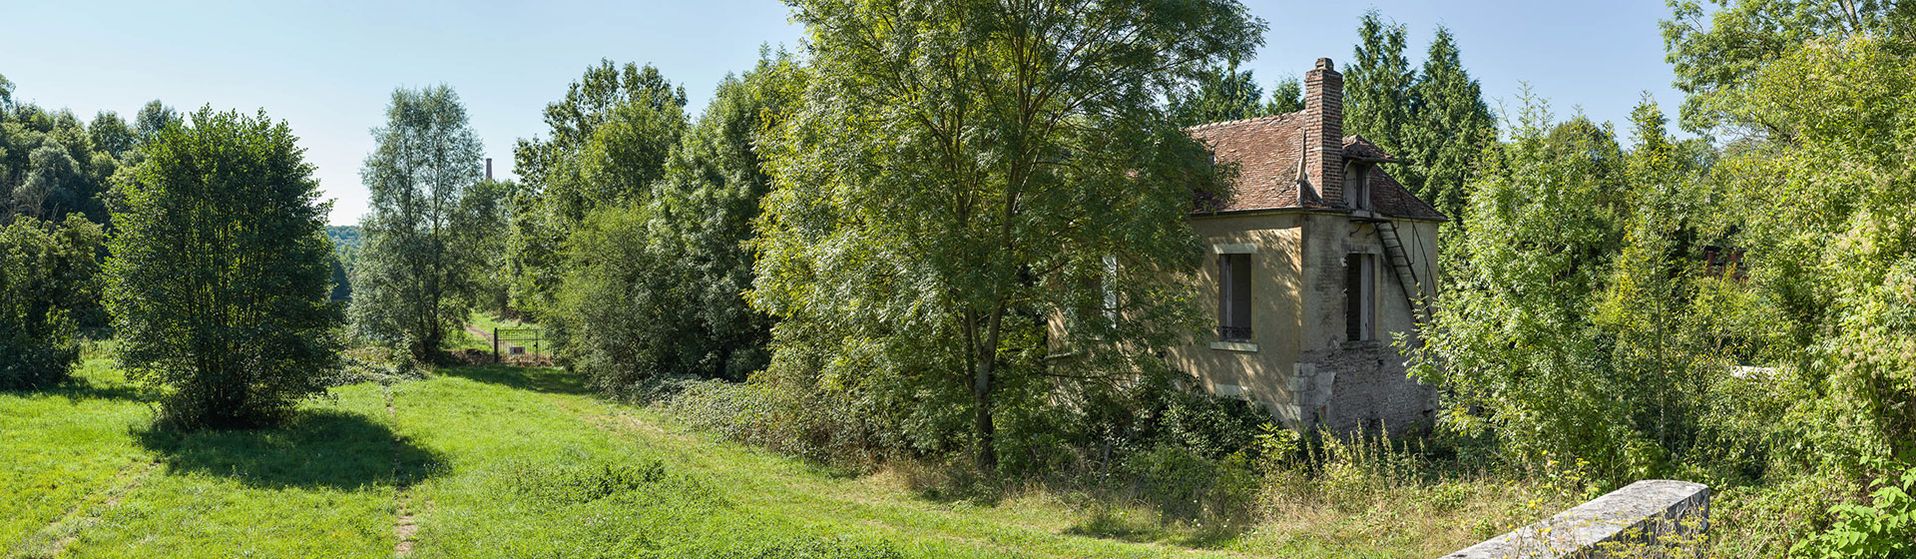 L’ancien site de l'écluse 48 du versant Seine, dite de La Forêt à Surgy. On y voit l’ancienne maison éclusière et le sas comblé.